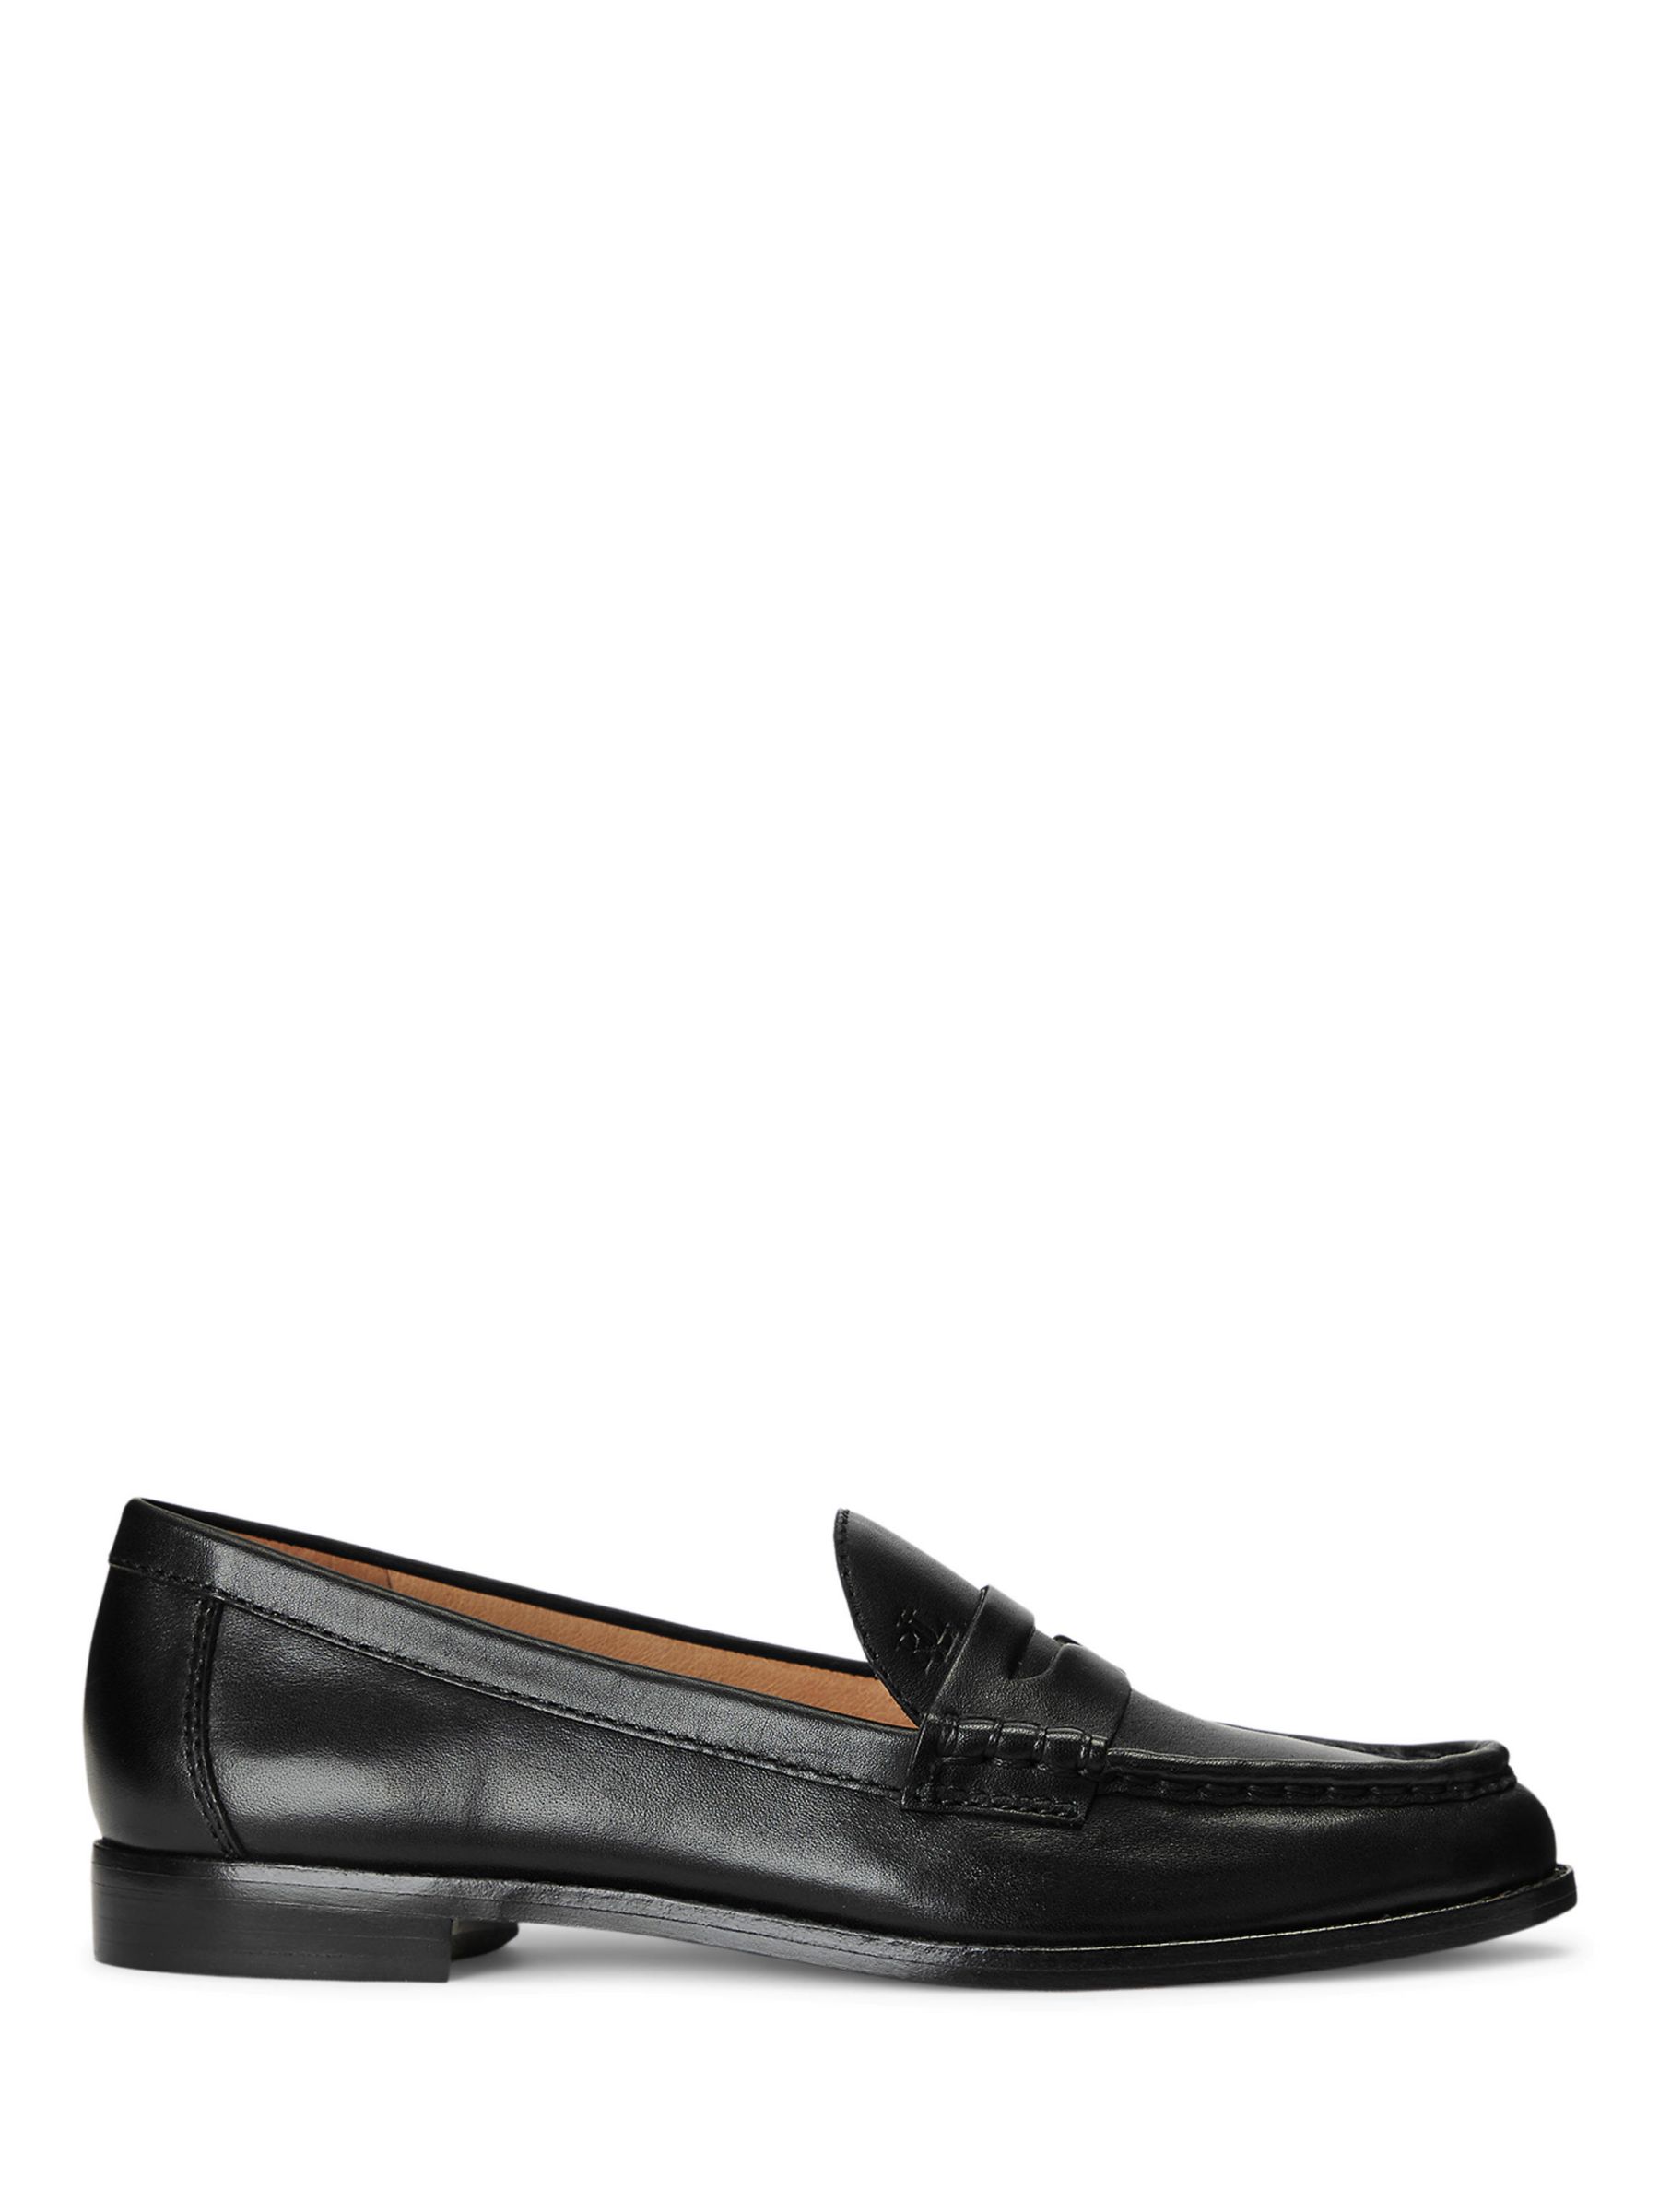 Lauren Ralph Lauren Winnie Leather Loafers, Black